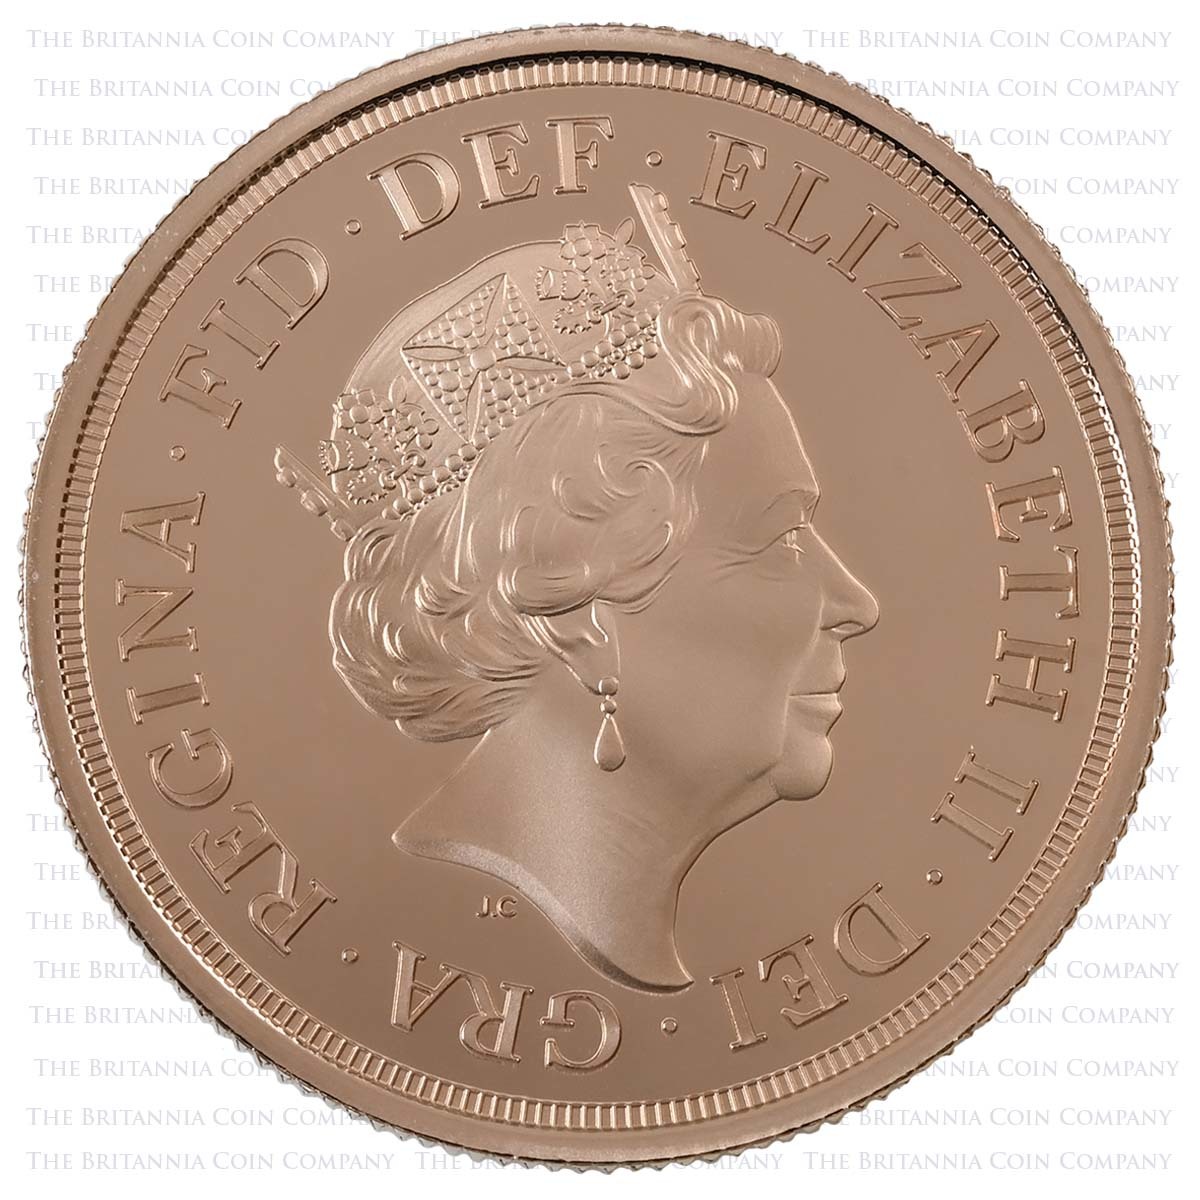 SV422 2022 Elizabeth II 4 Coin Gold Proof Sovereign Set Platinum Jubilee Obverse